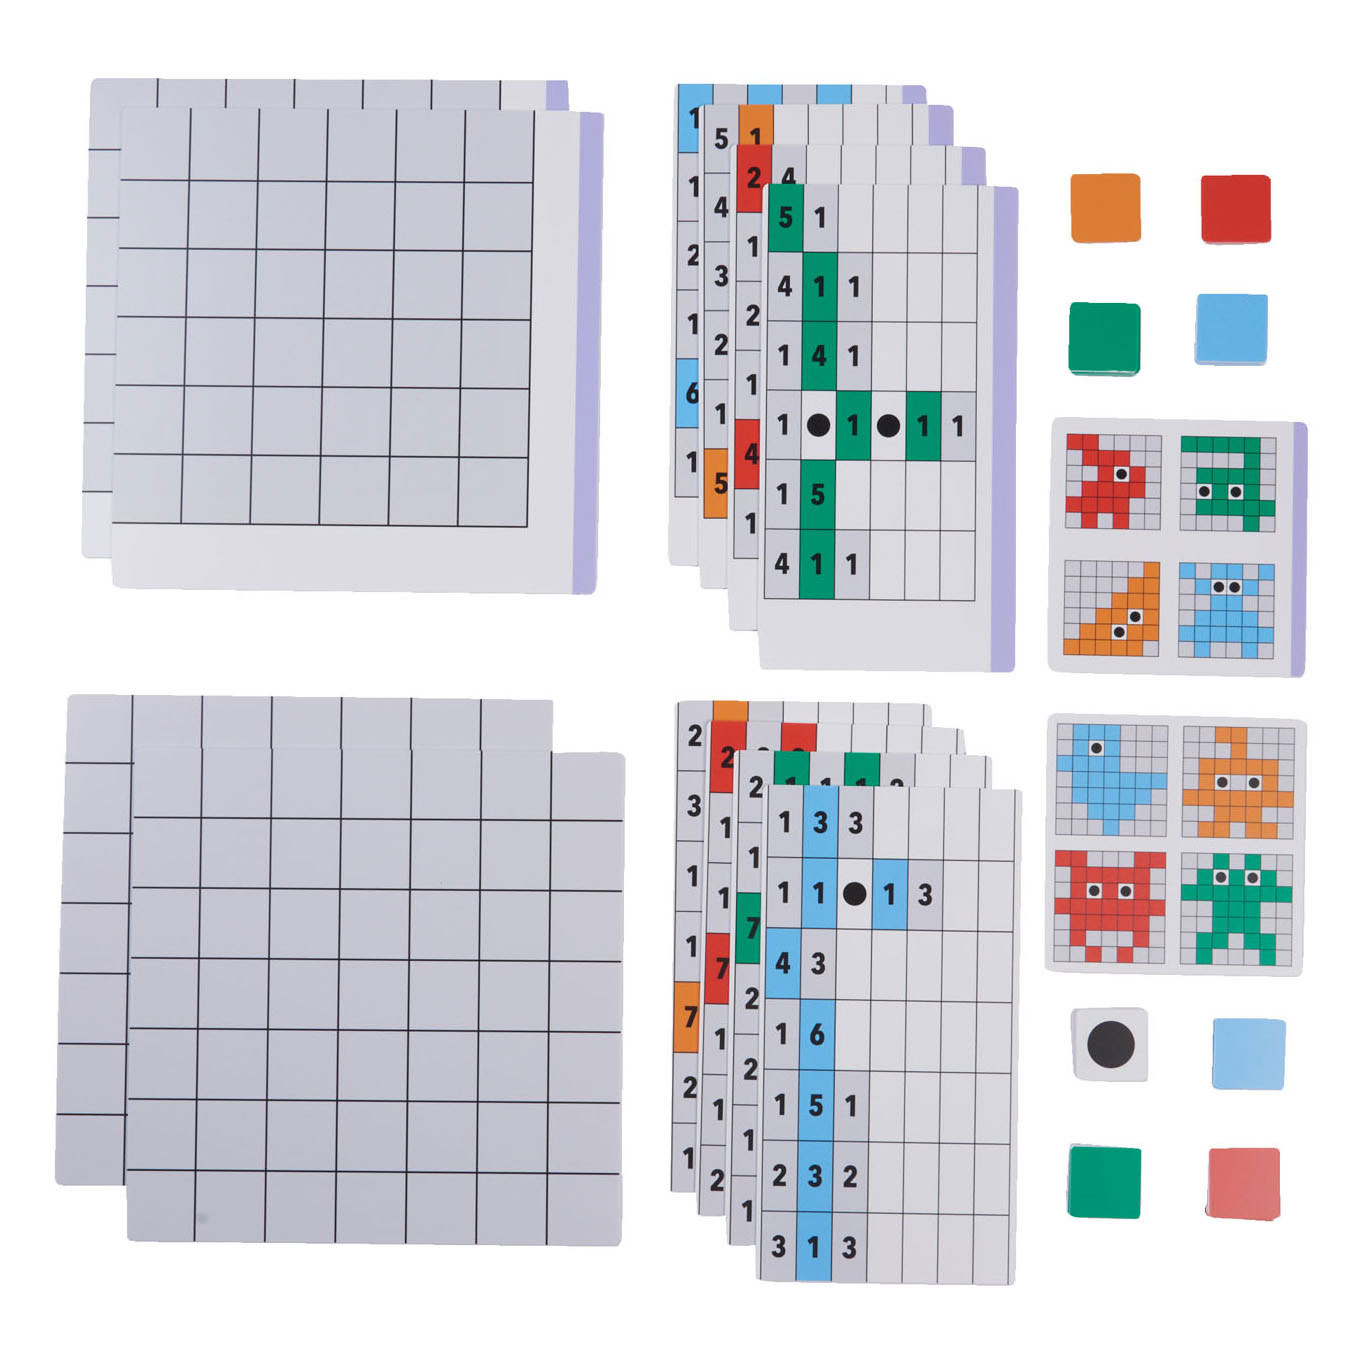 Rolf Essentials – Pixelspaßiges Mathe-Spiel